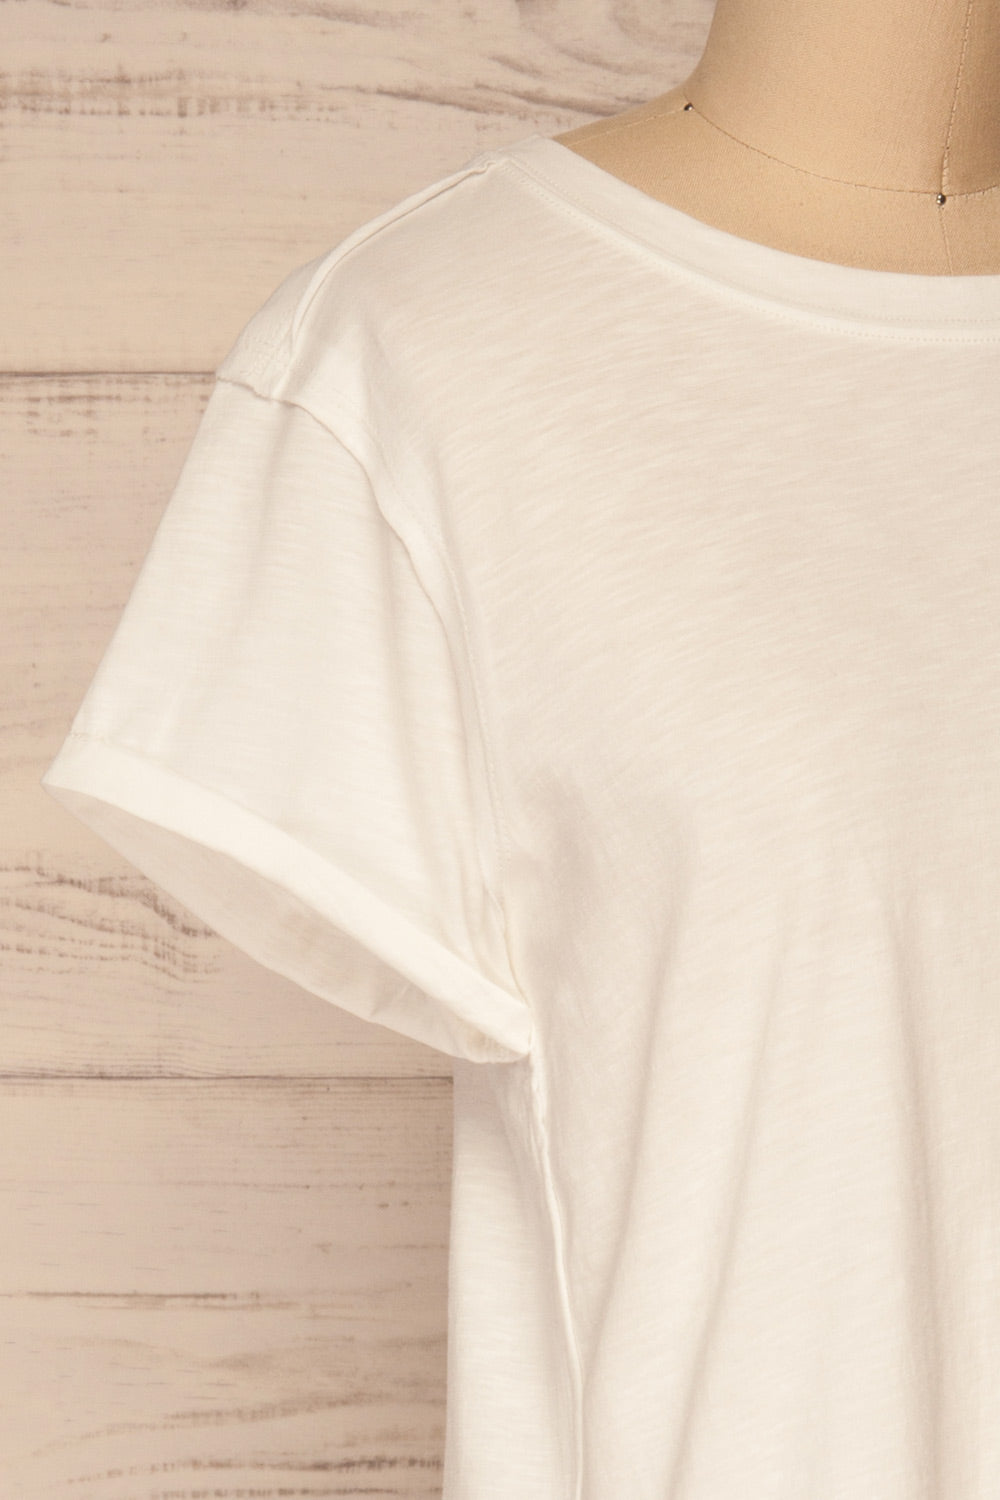 Quarreni White Crop T-Shirt | La petite garçonne side close-up